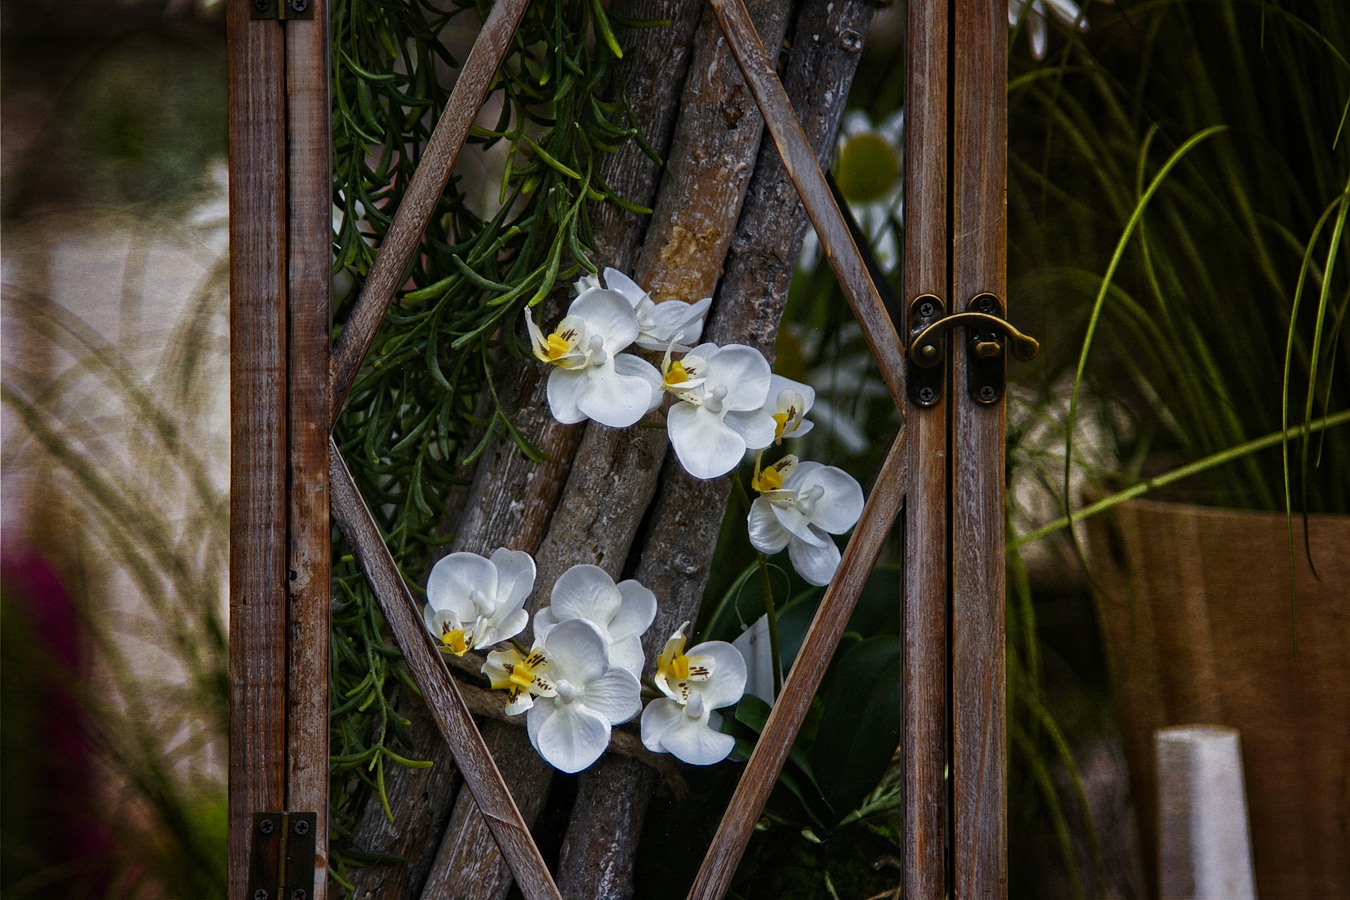 Orchidee im Glaskasten.....